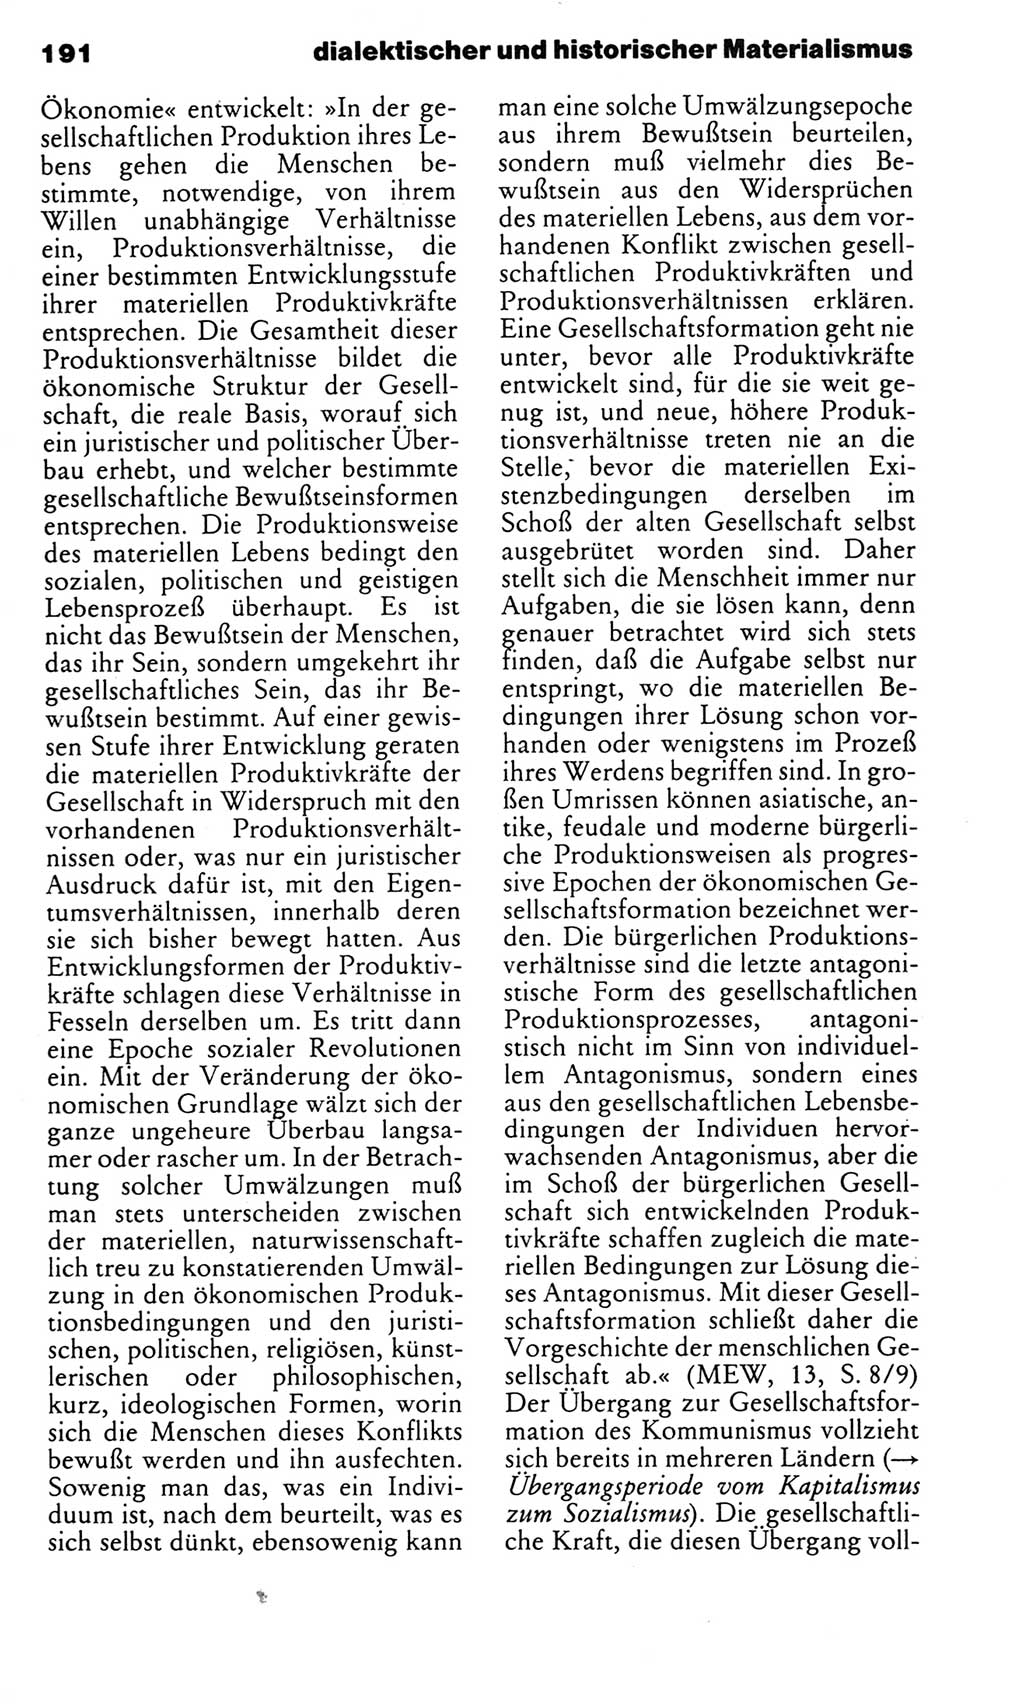 Kleines politisches Wörterbuch [Deutsche Demokratische Republik (DDR)] 1983, Seite 191 (Kl. pol. Wb. DDR 1983, S. 191)